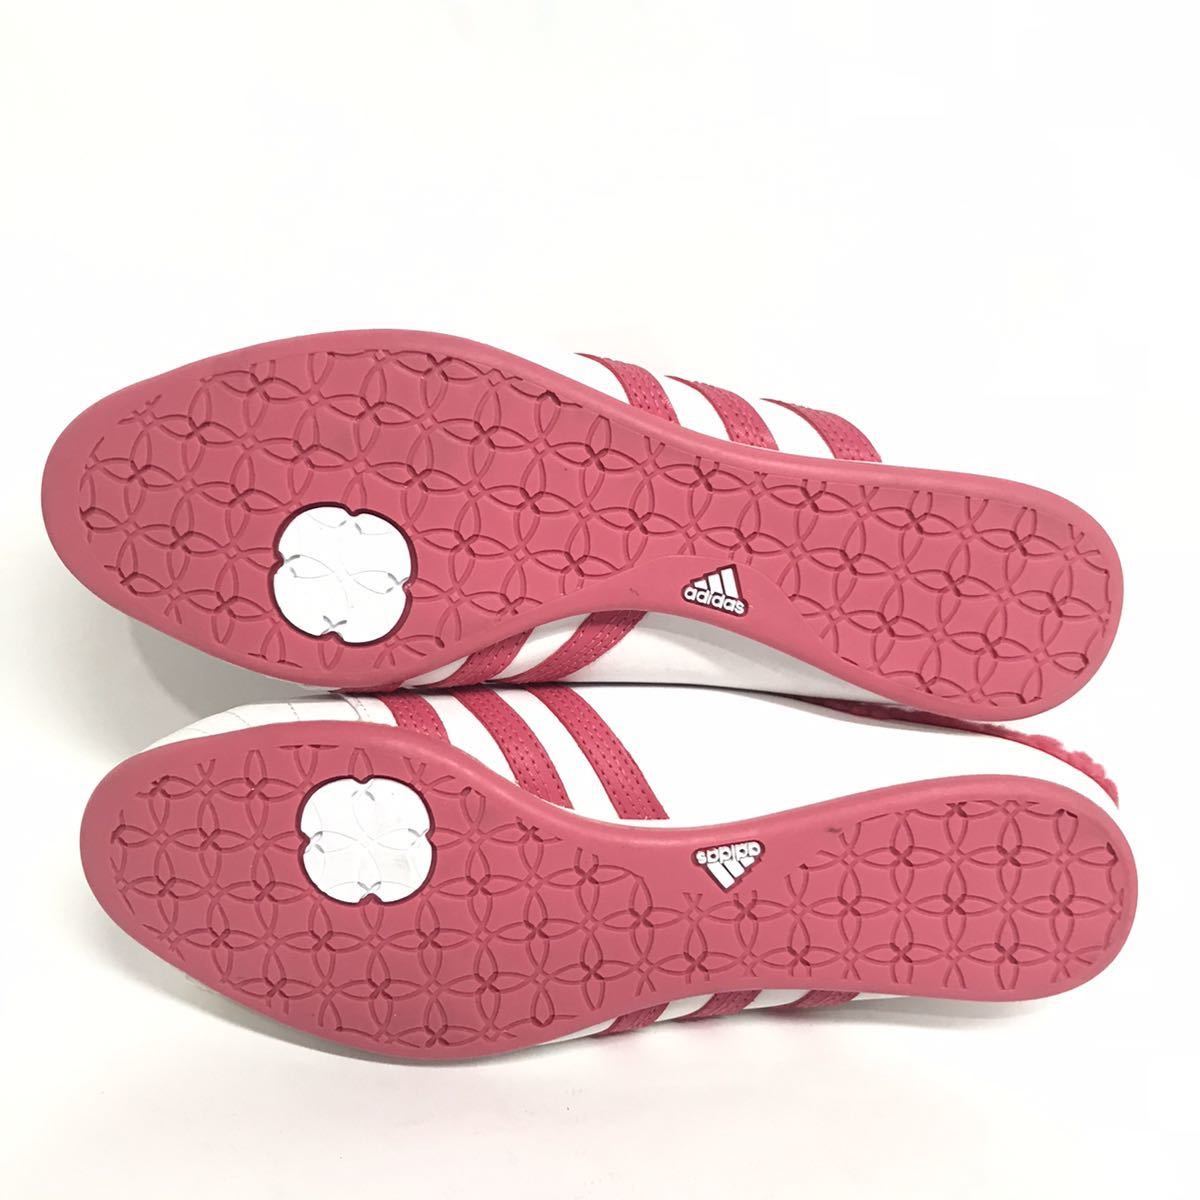  rare! unused! 08 year made limitation adidas Tara Slip On 25.5cm white pink / cod slip-on shoes sandals clog unused 